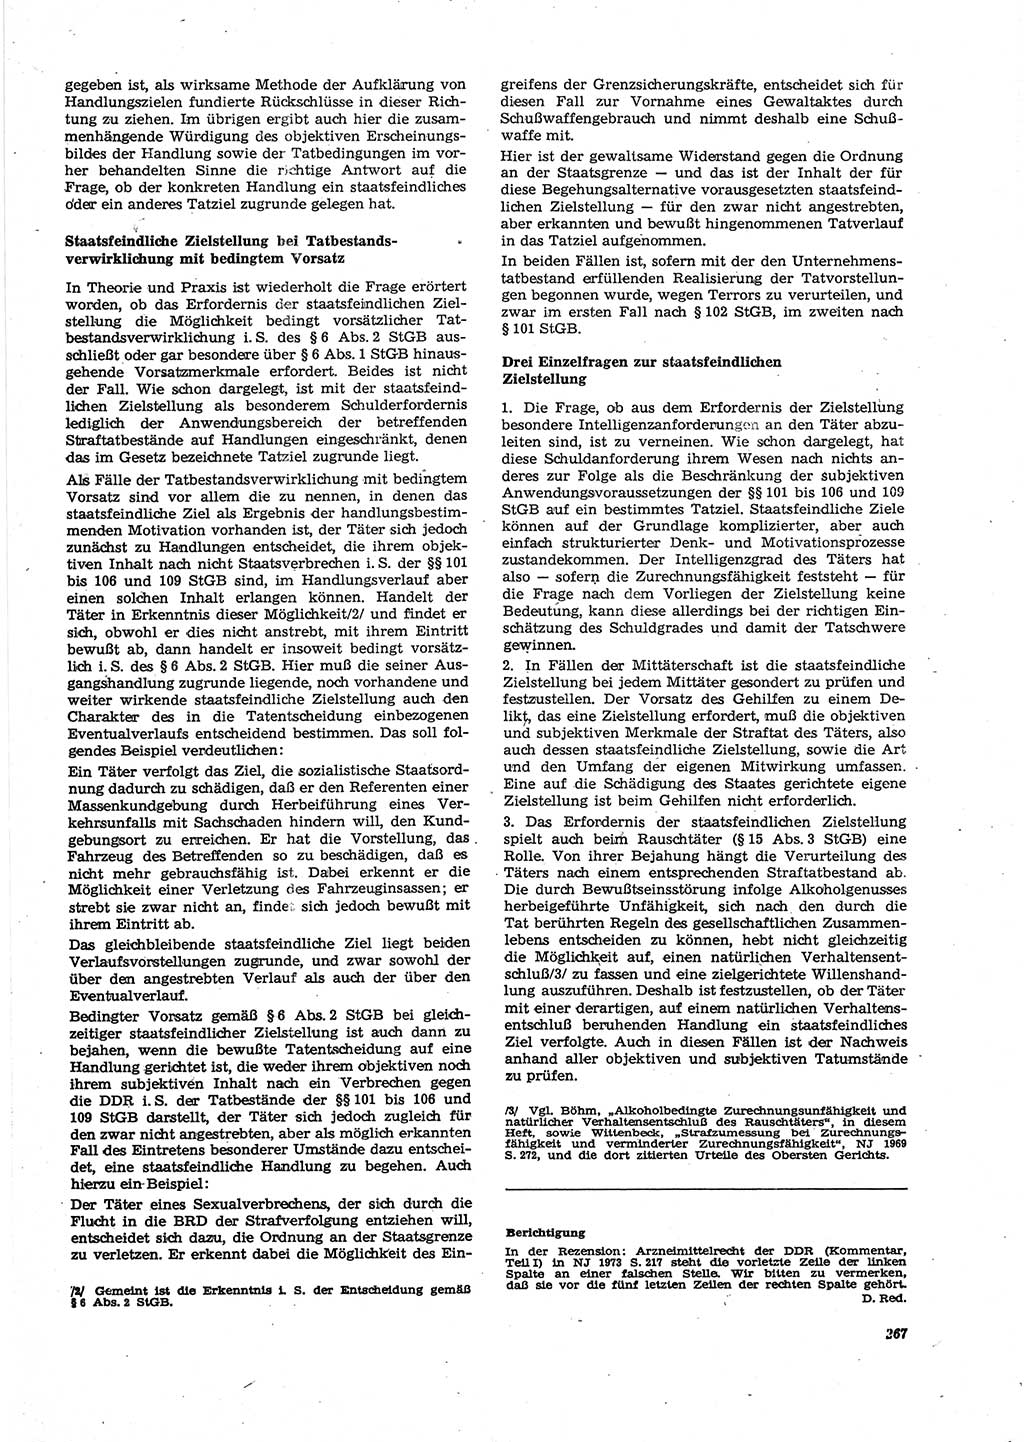 Neue Justiz (NJ), Zeitschrift für Recht und Rechtswissenschaft [Deutsche Demokratische Republik (DDR)], 27. Jahrgang 1973, Seite 267 (NJ DDR 1973, S. 267)